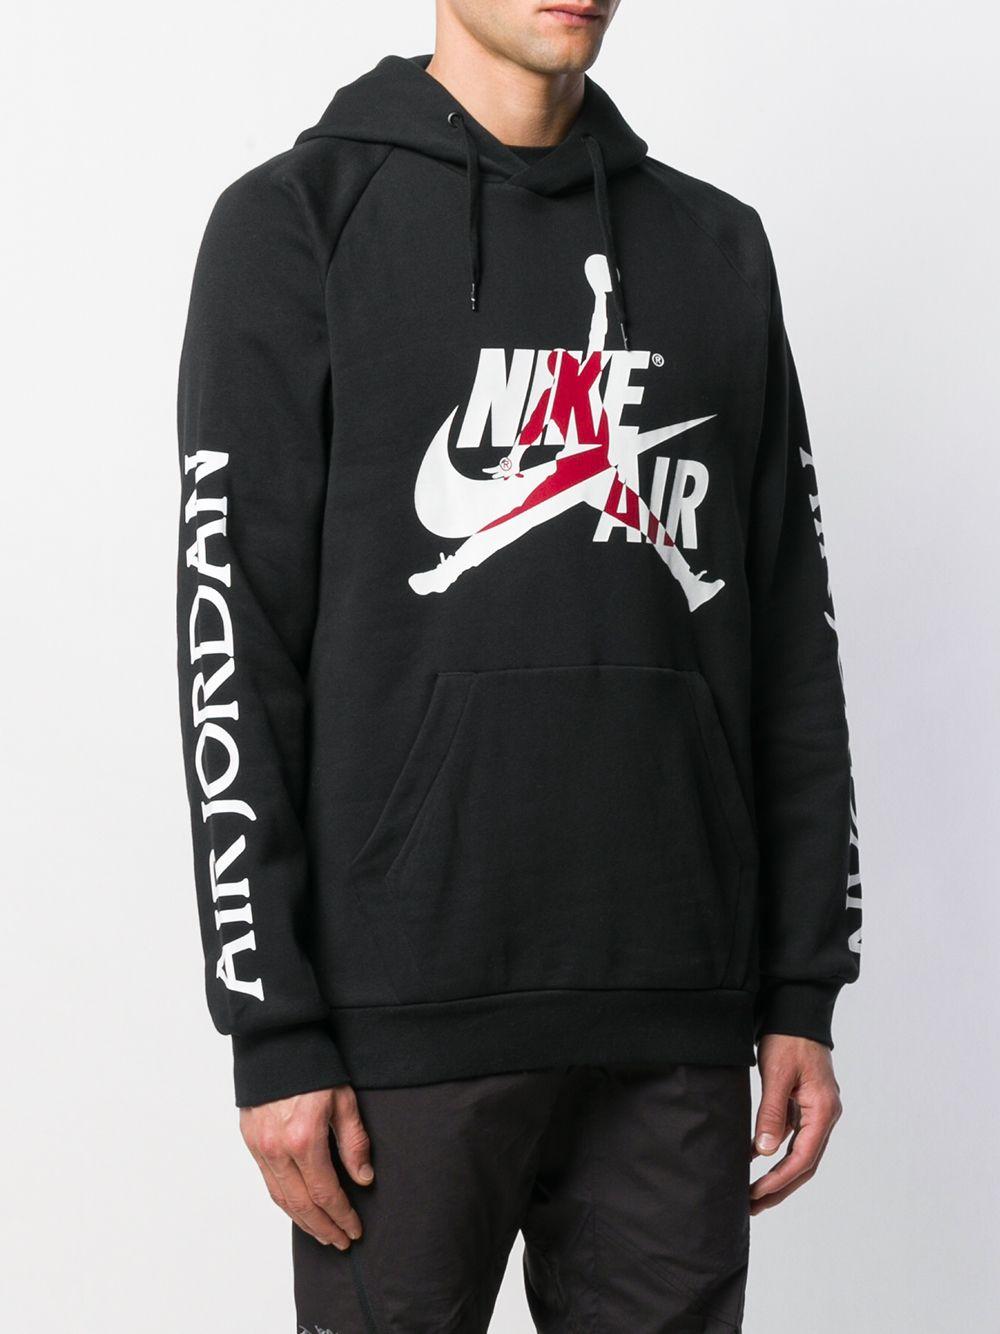 Nike Cotton Air Jordan Hoodie in Black for Men - Lyst